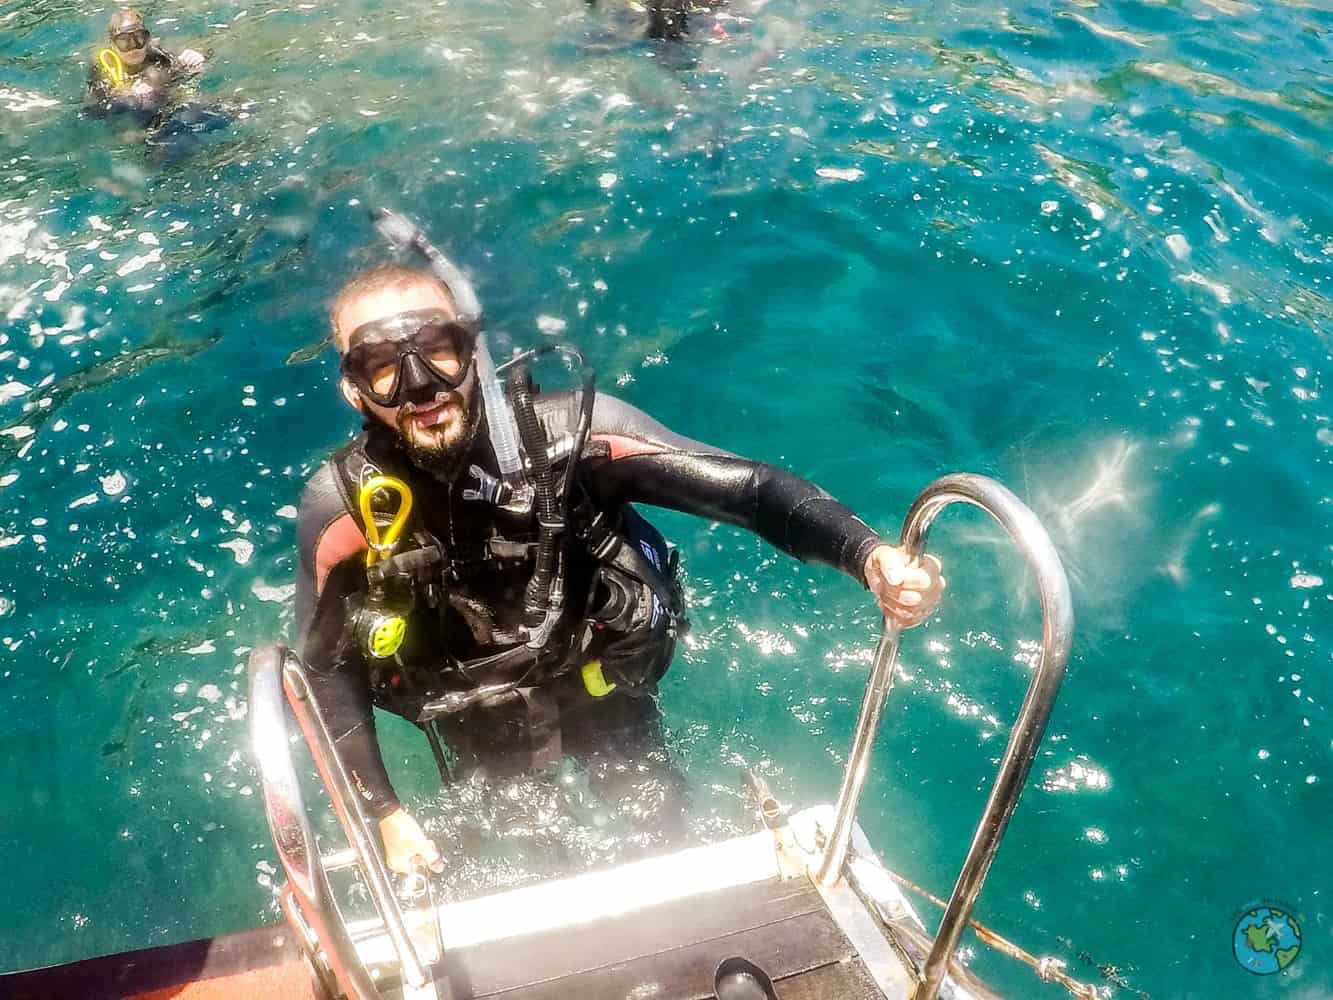 André nas escadas do barco com o equipamento. Curso de mergulho open water diver com a mar do Rio